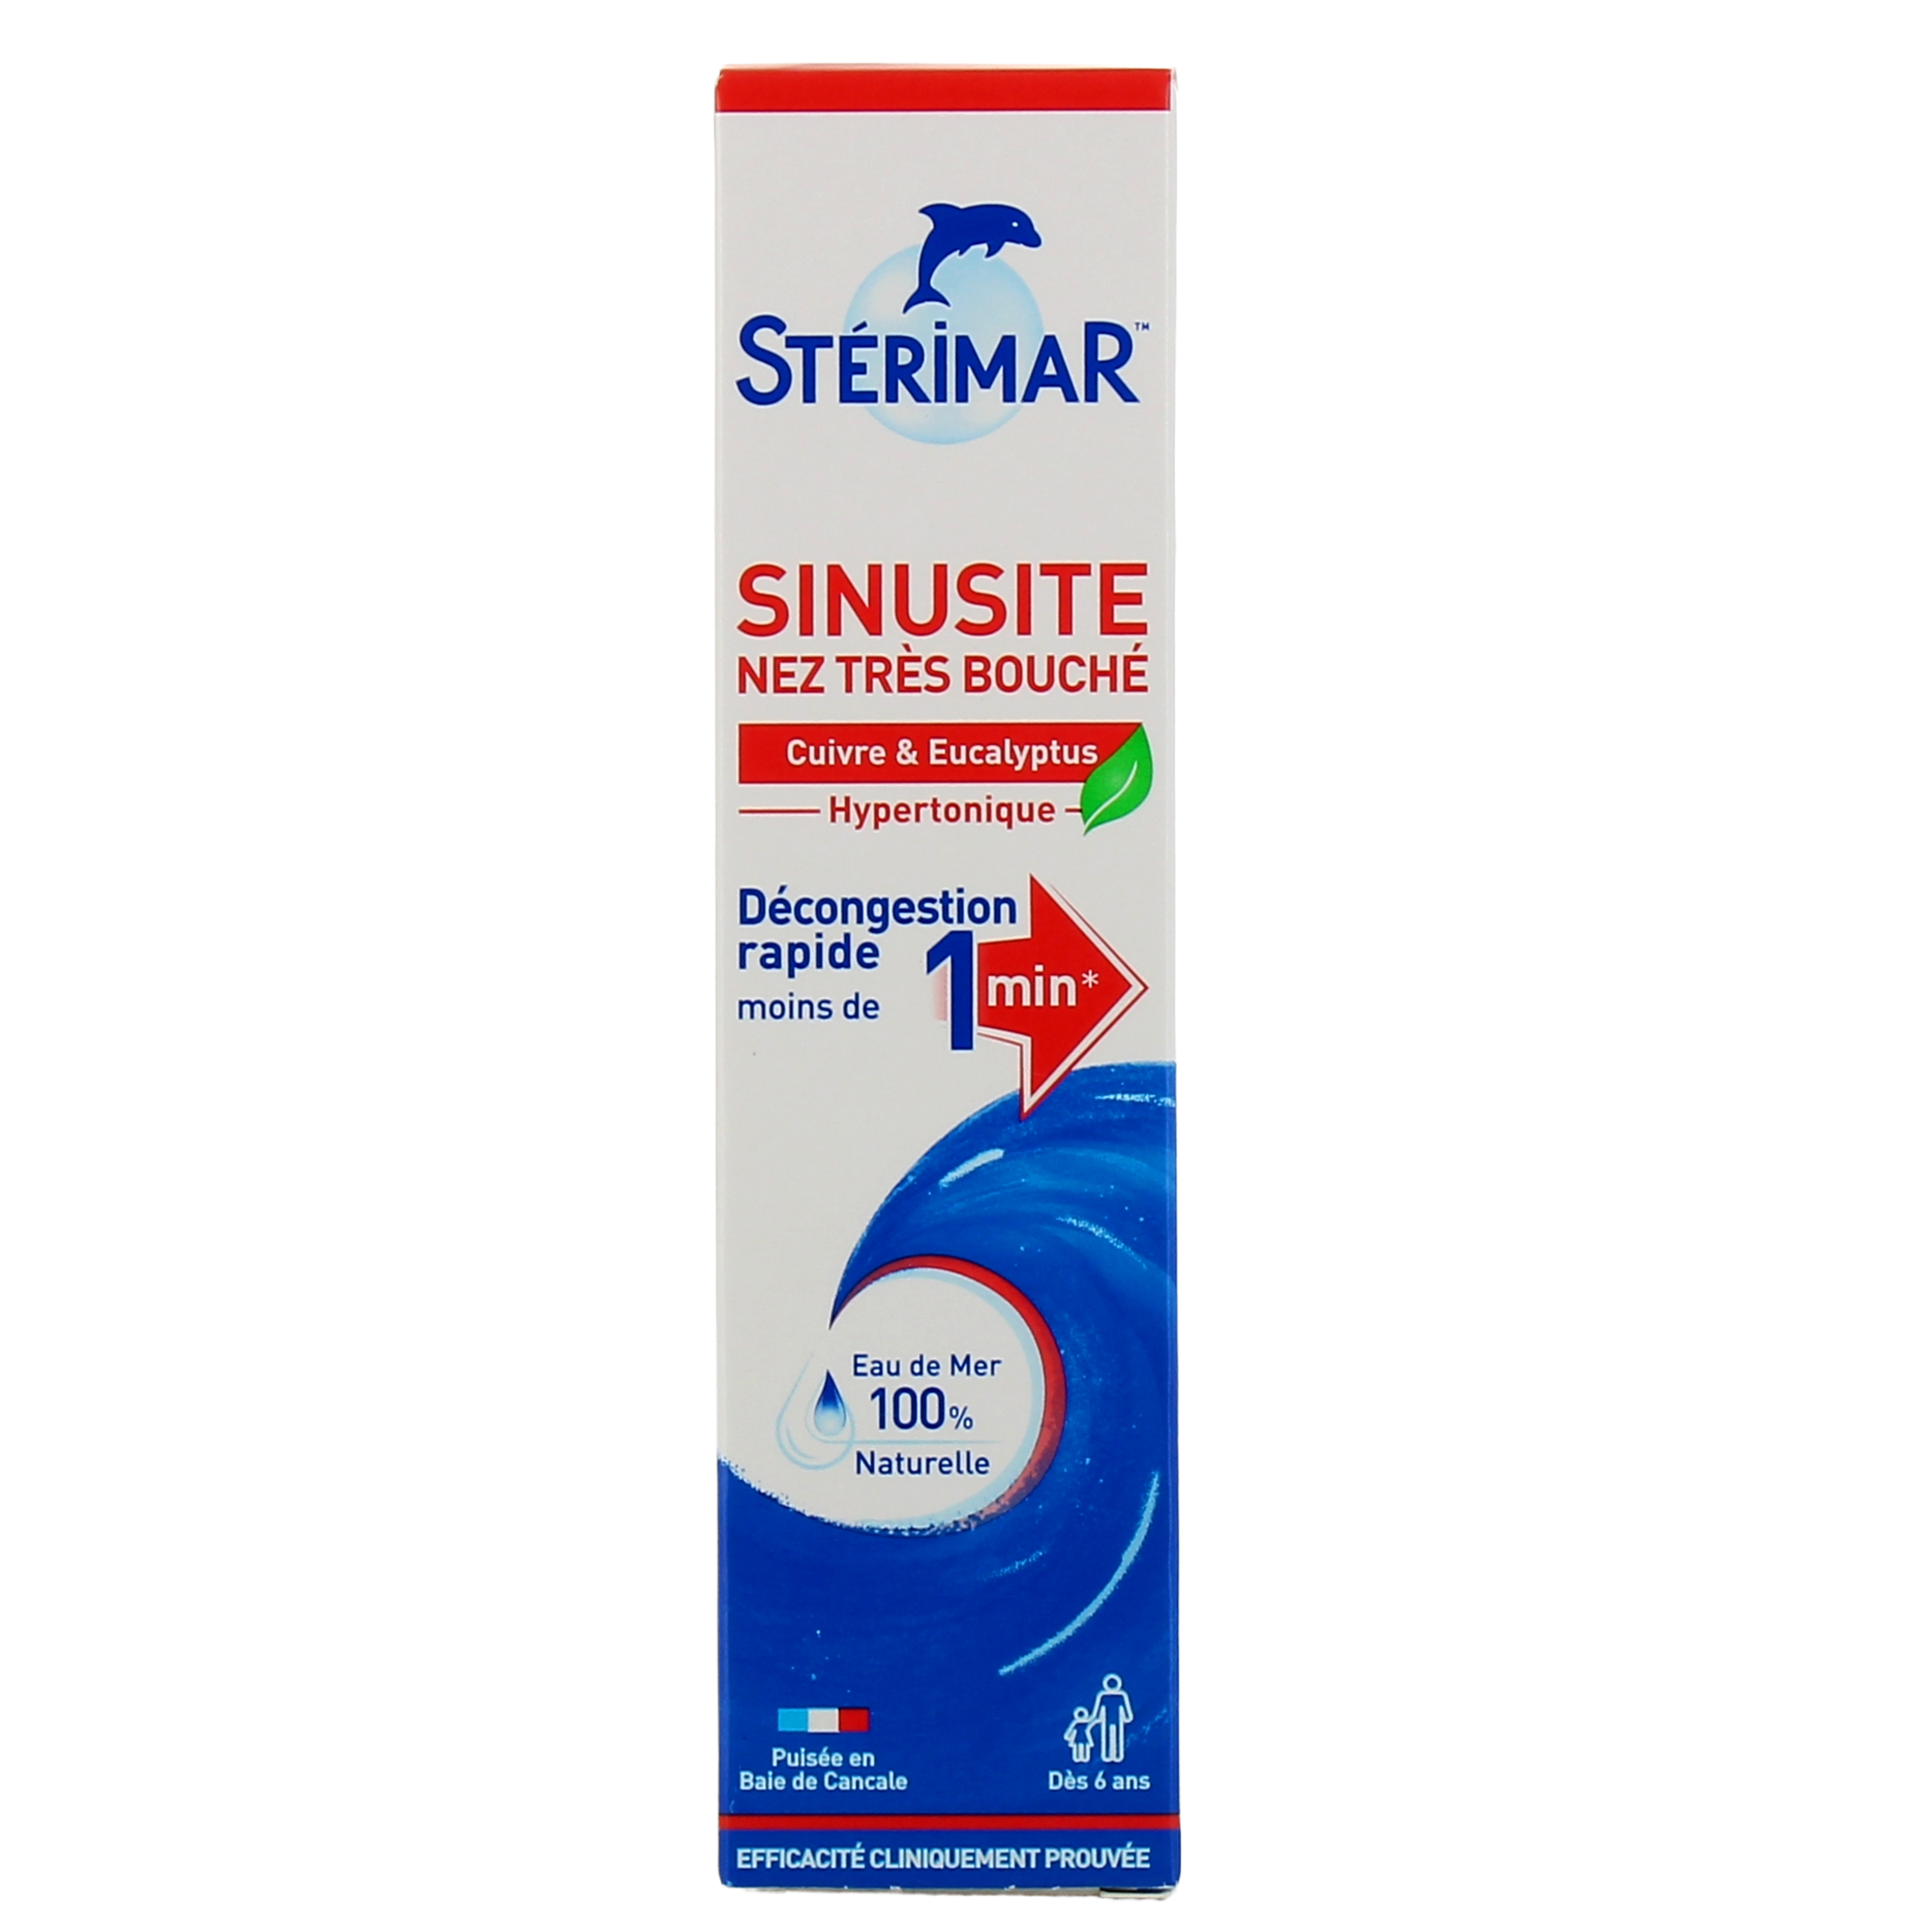 Stérimar sinusite nez très bouché 50 ml